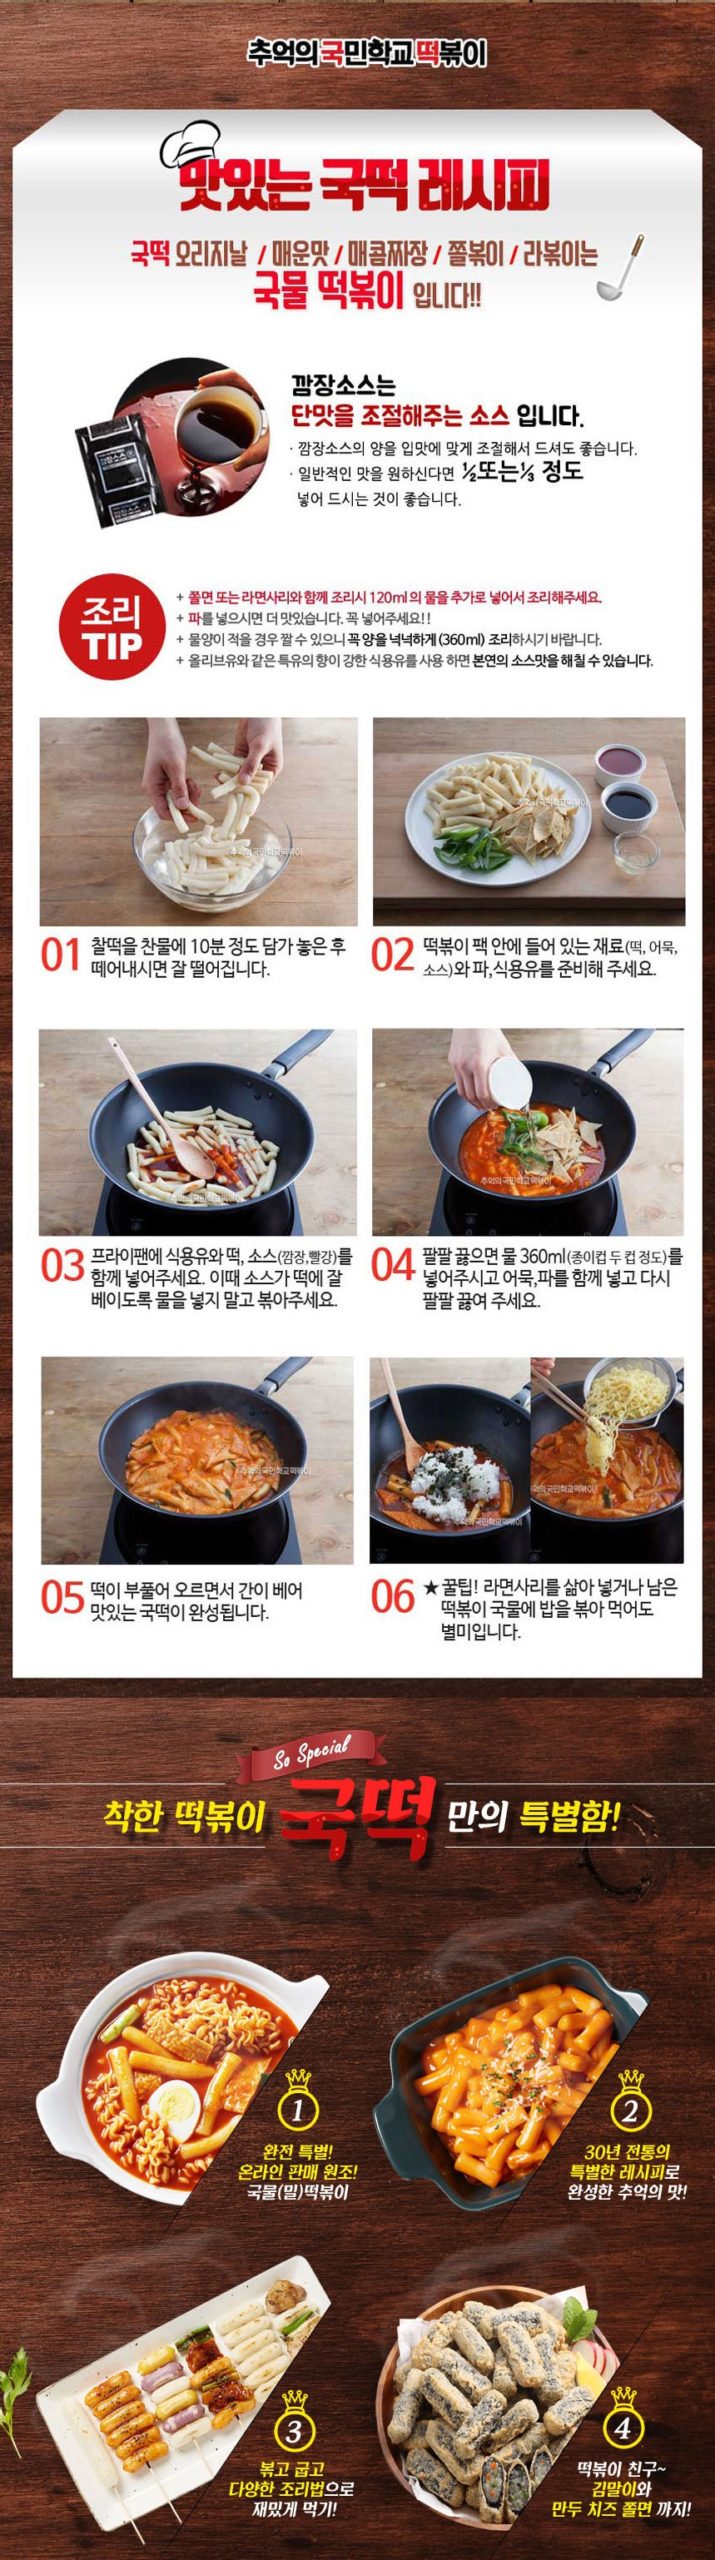 韓國食品-[추억의 국민학교 떡볶이] 찰떡볶이 알알이 긴떡 1kg (밀떡)